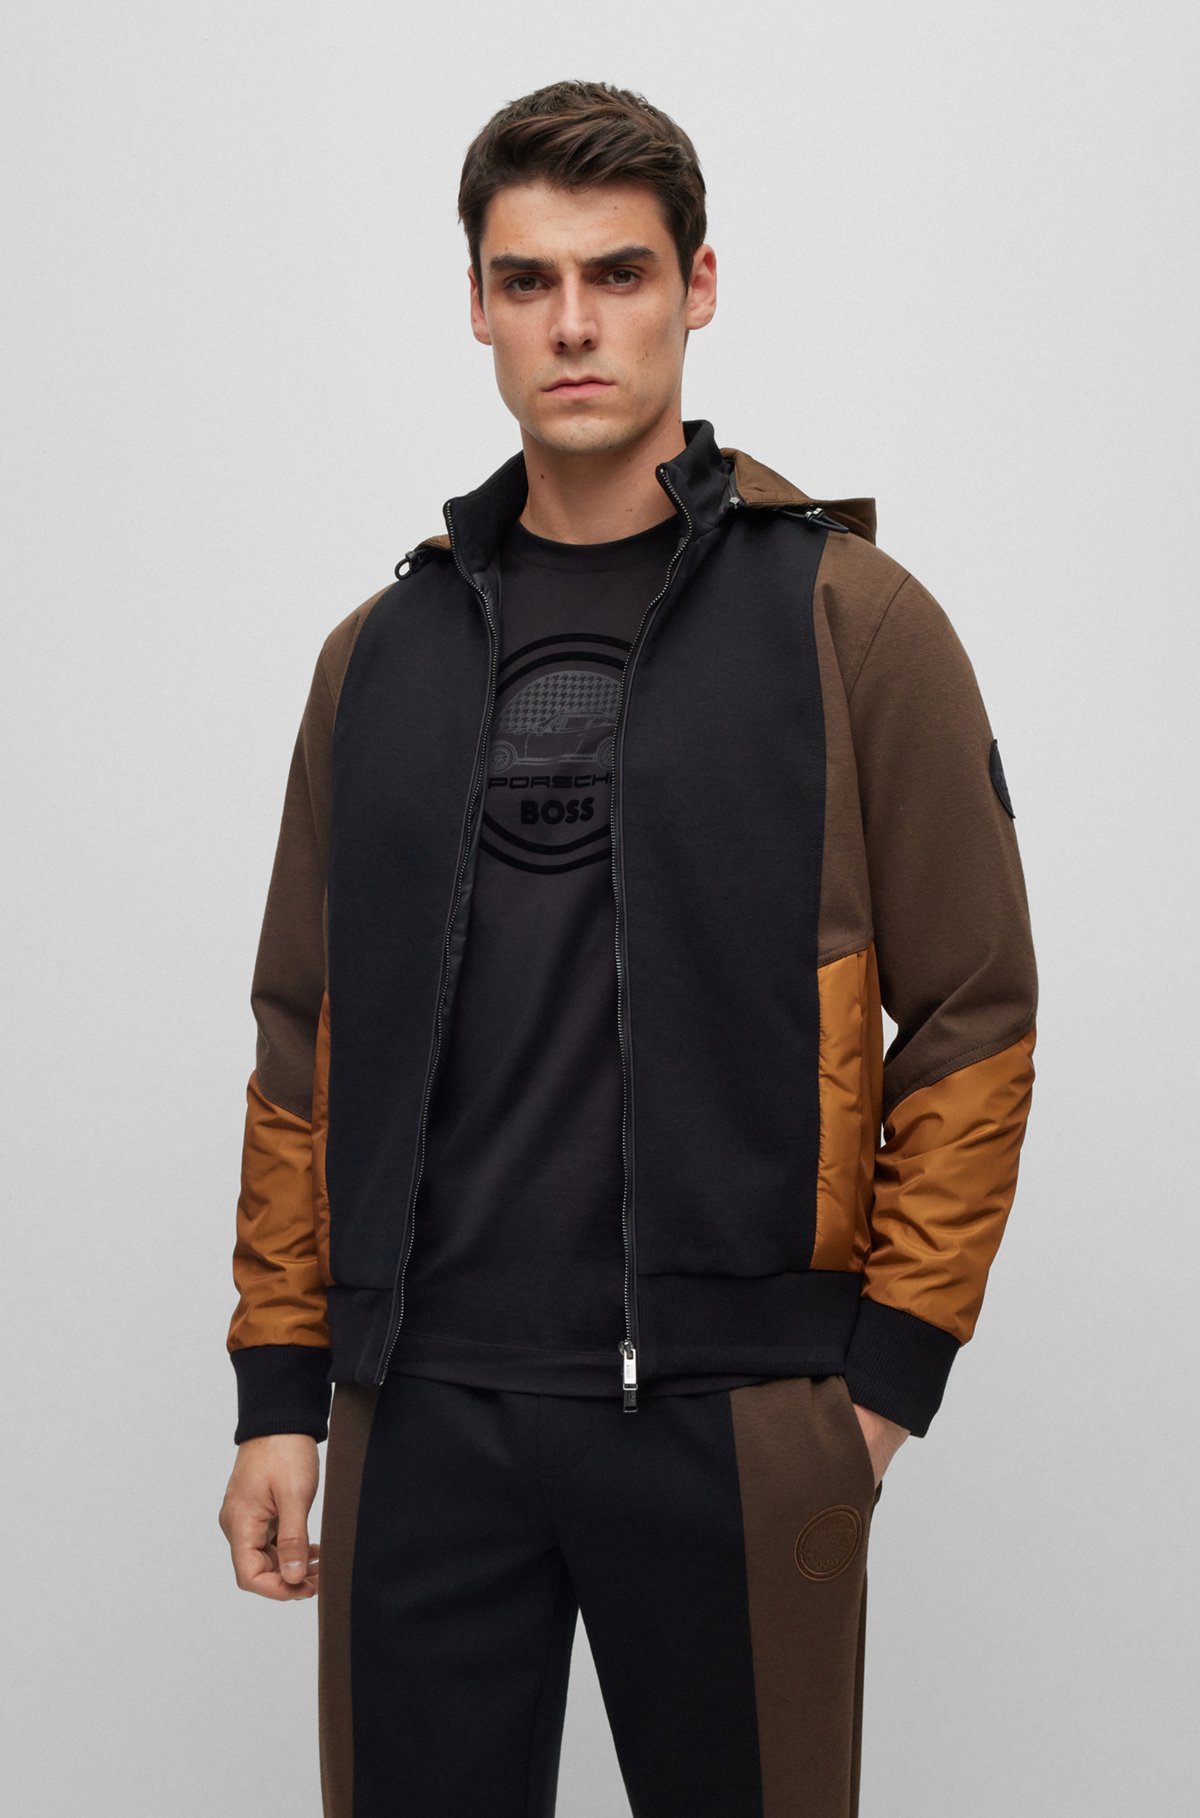 Porsche x BOSS zip-up hoodie in mixed materials, Black